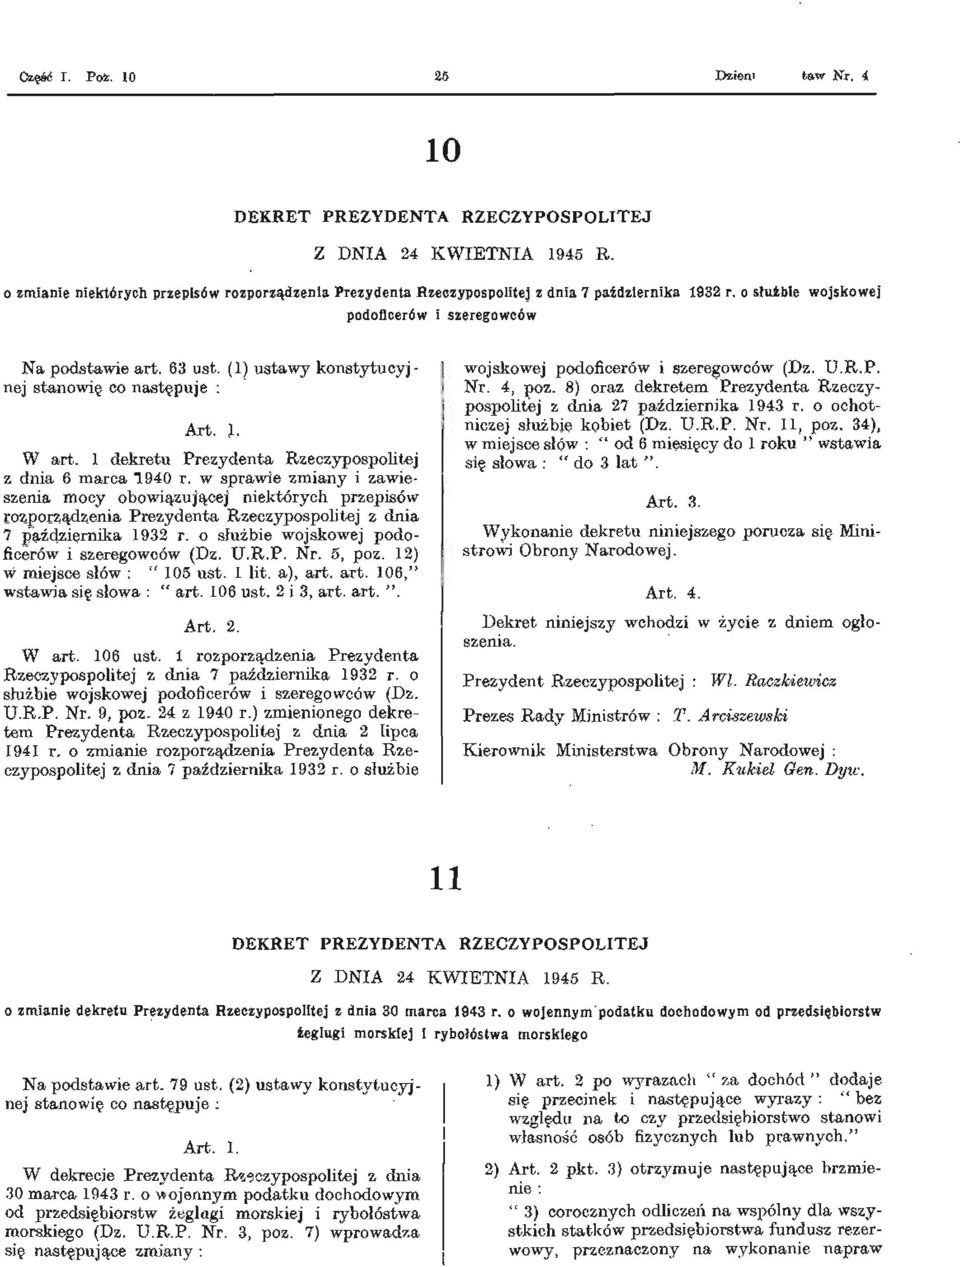 w sprawie zmiany i zawieszenia mocy obowiązującej niektórych przepisów rozporządzenia Prezydenta Rzeczypospolitej z dnia 7 października 1932 r. o służbie wojskowej podoficerów i szeregowców (Dz. U.R.P. Nr.